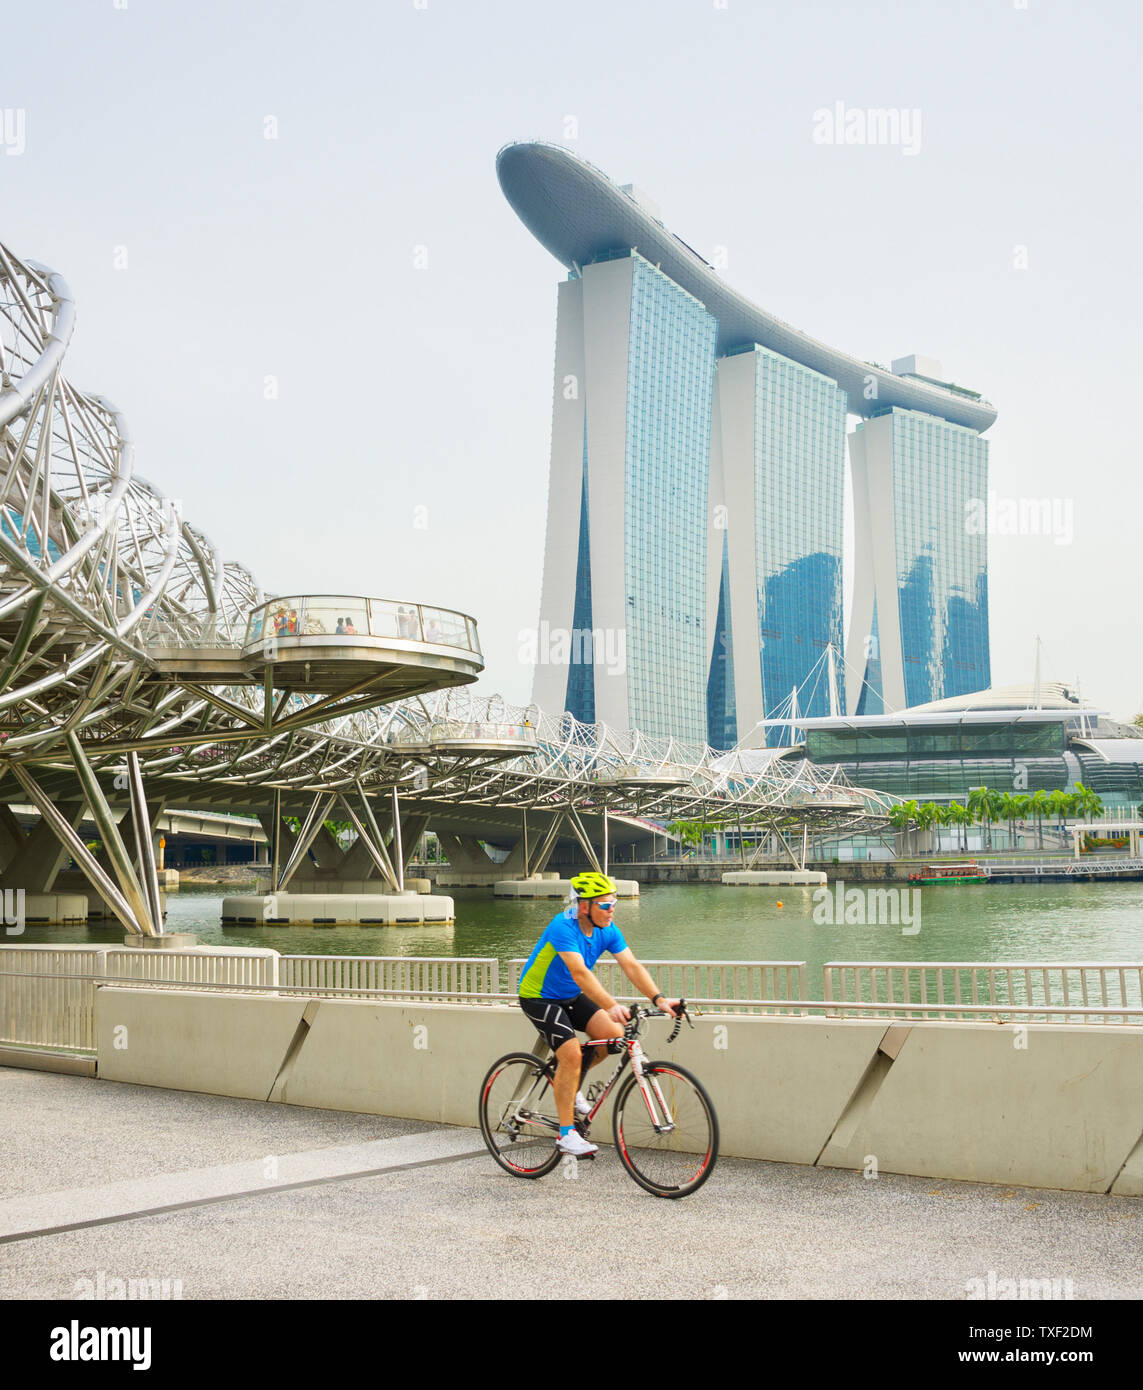 Singapur - Enero 14, 2017: el ciclista bicicleta Equitación, Singapur Marina Bay, Museo ArtScience y Helix Bridge en segundo plano. Foto de stock